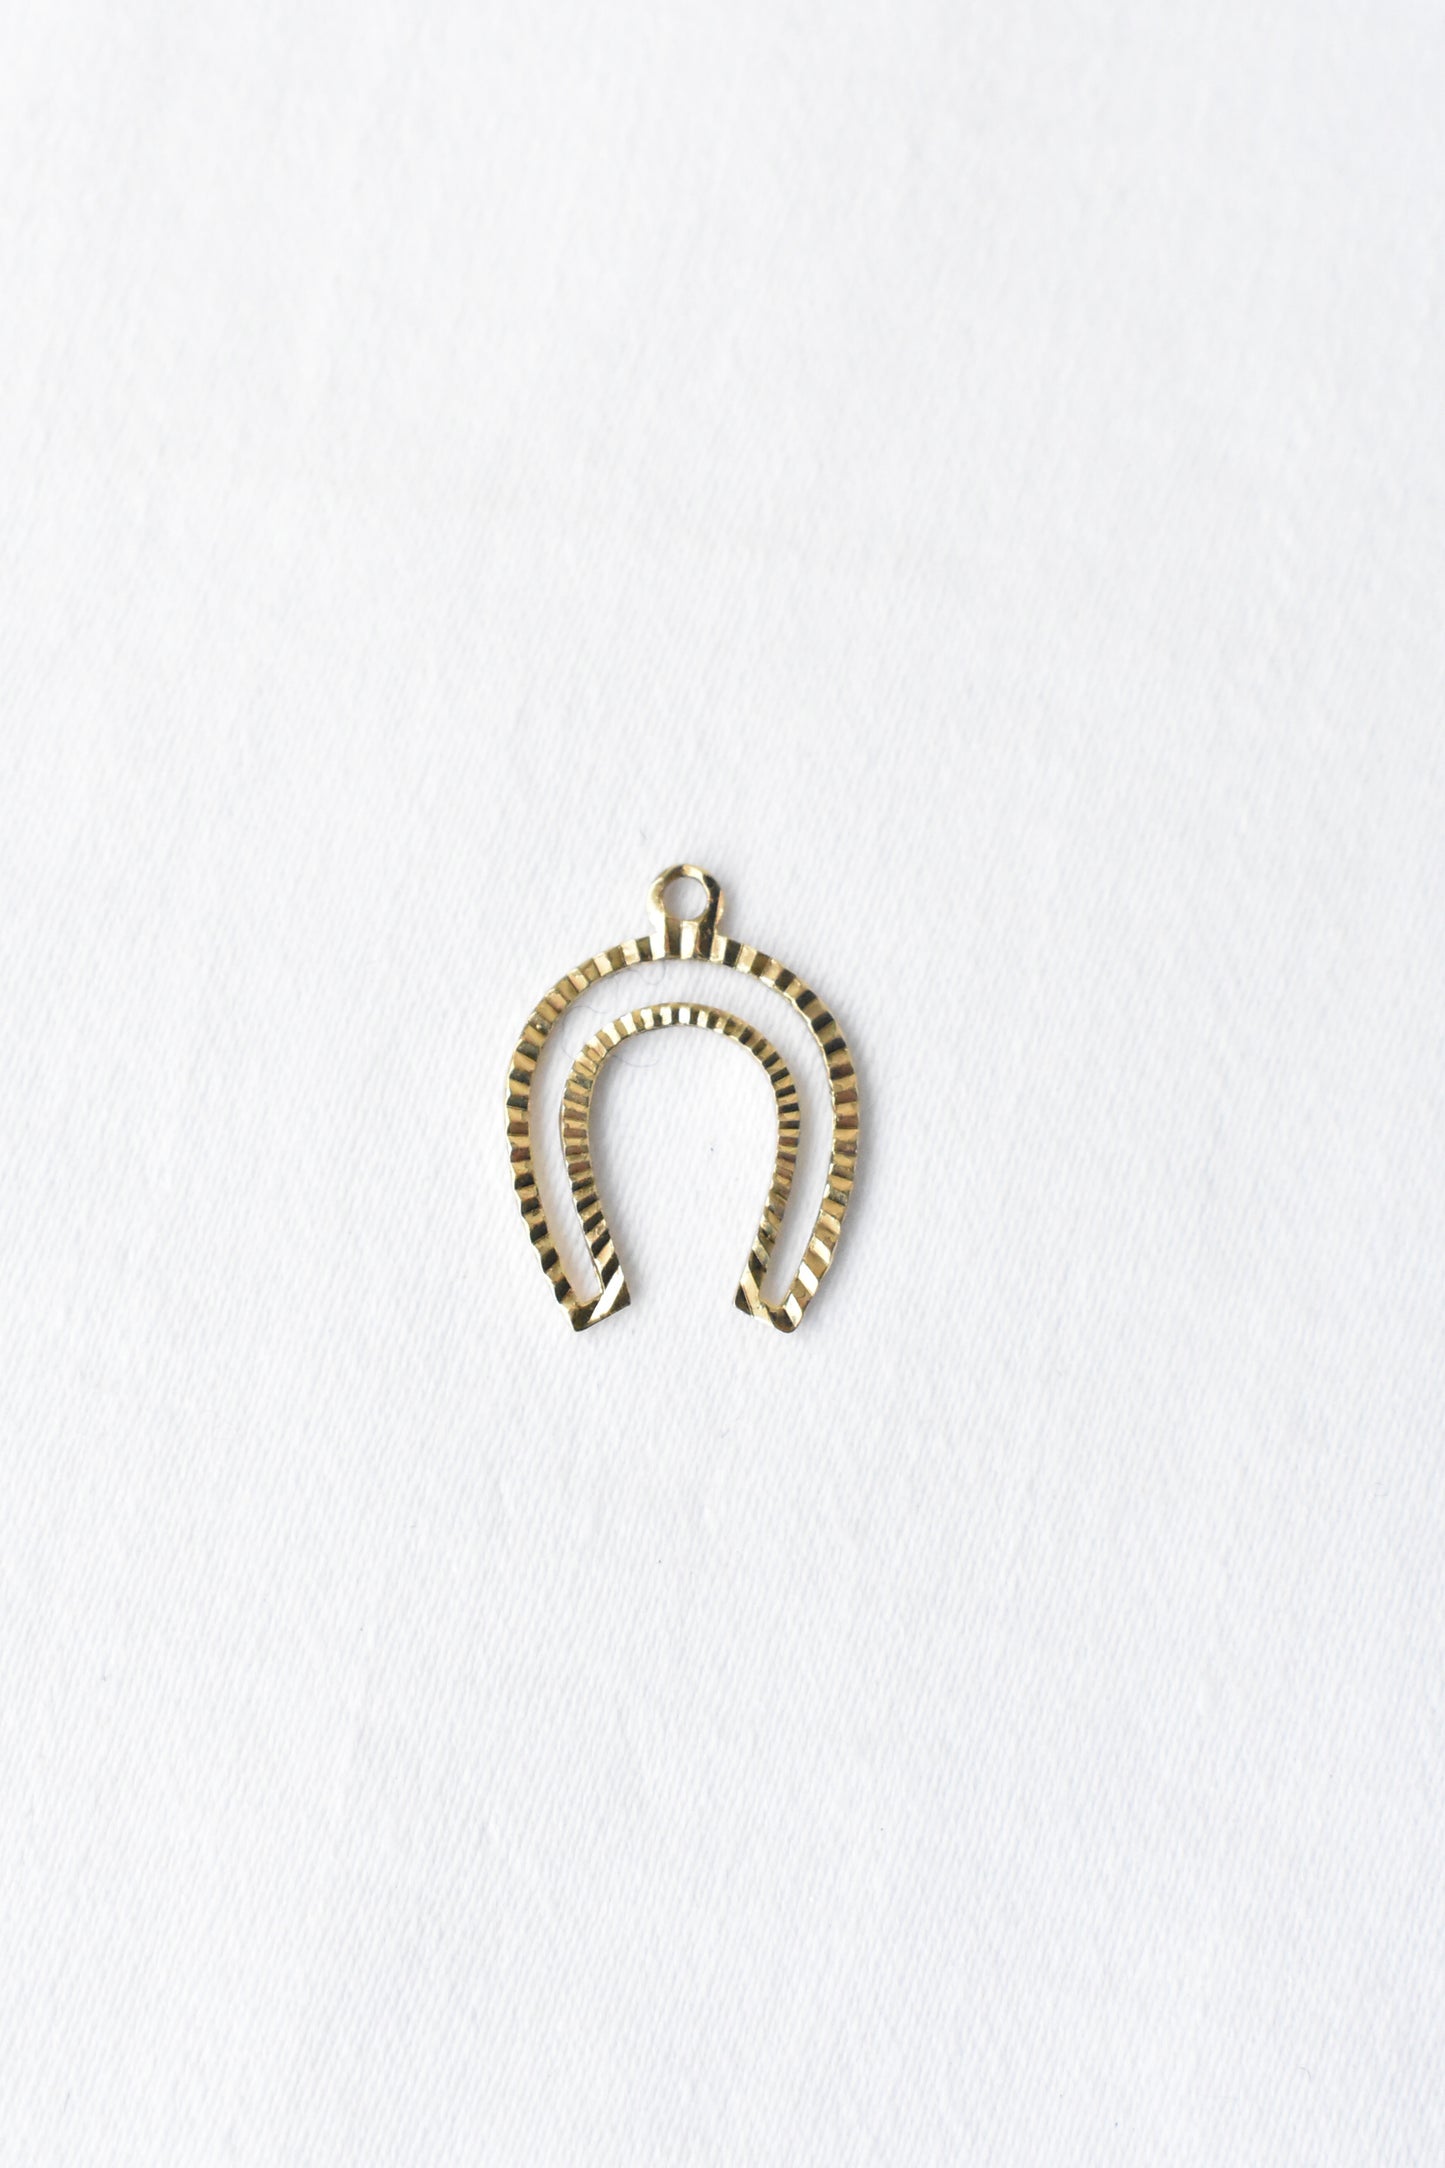 8ct gold horseshoe charm pendant